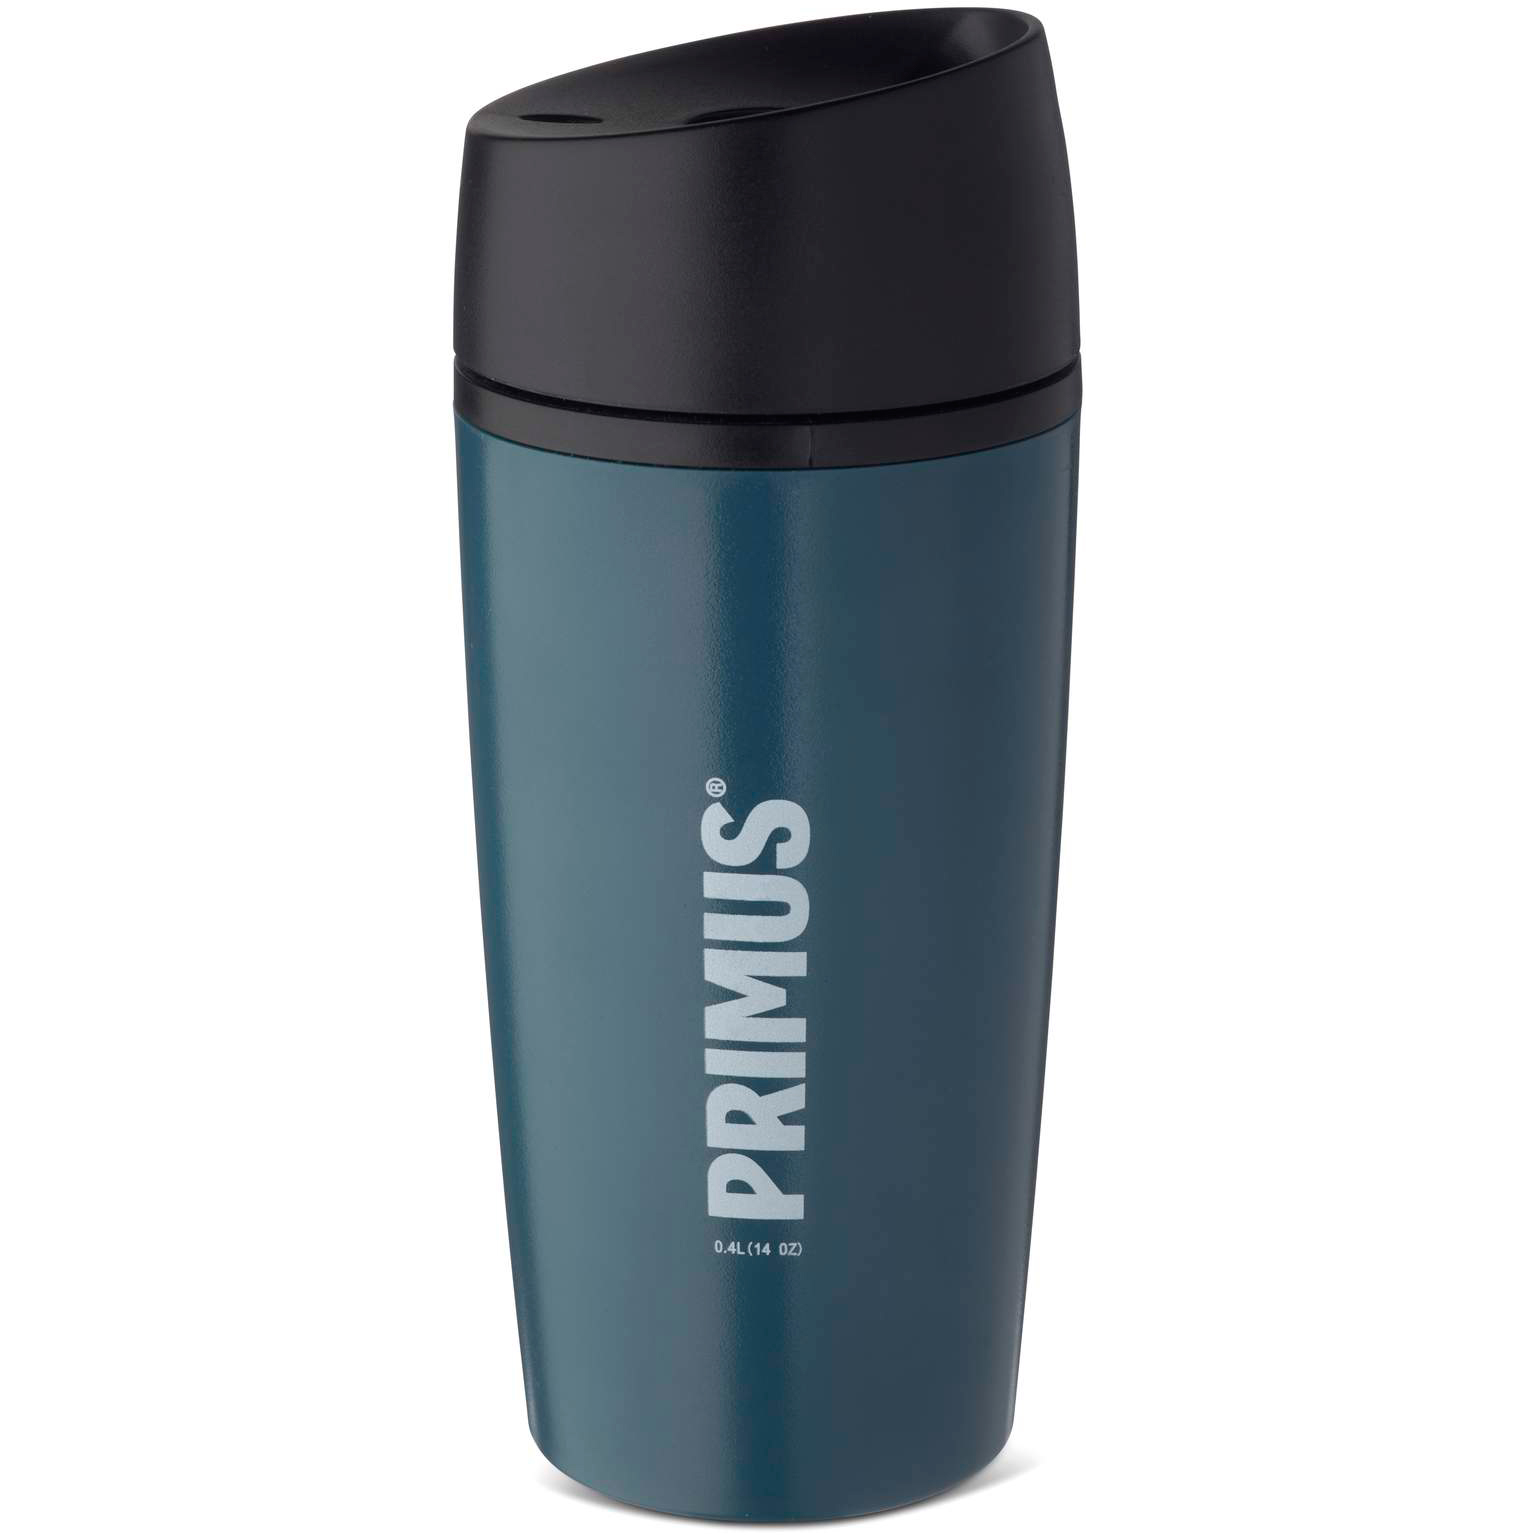 Produktbild von Primus Commuter Mug 0.4 Liter Becher - deep blue